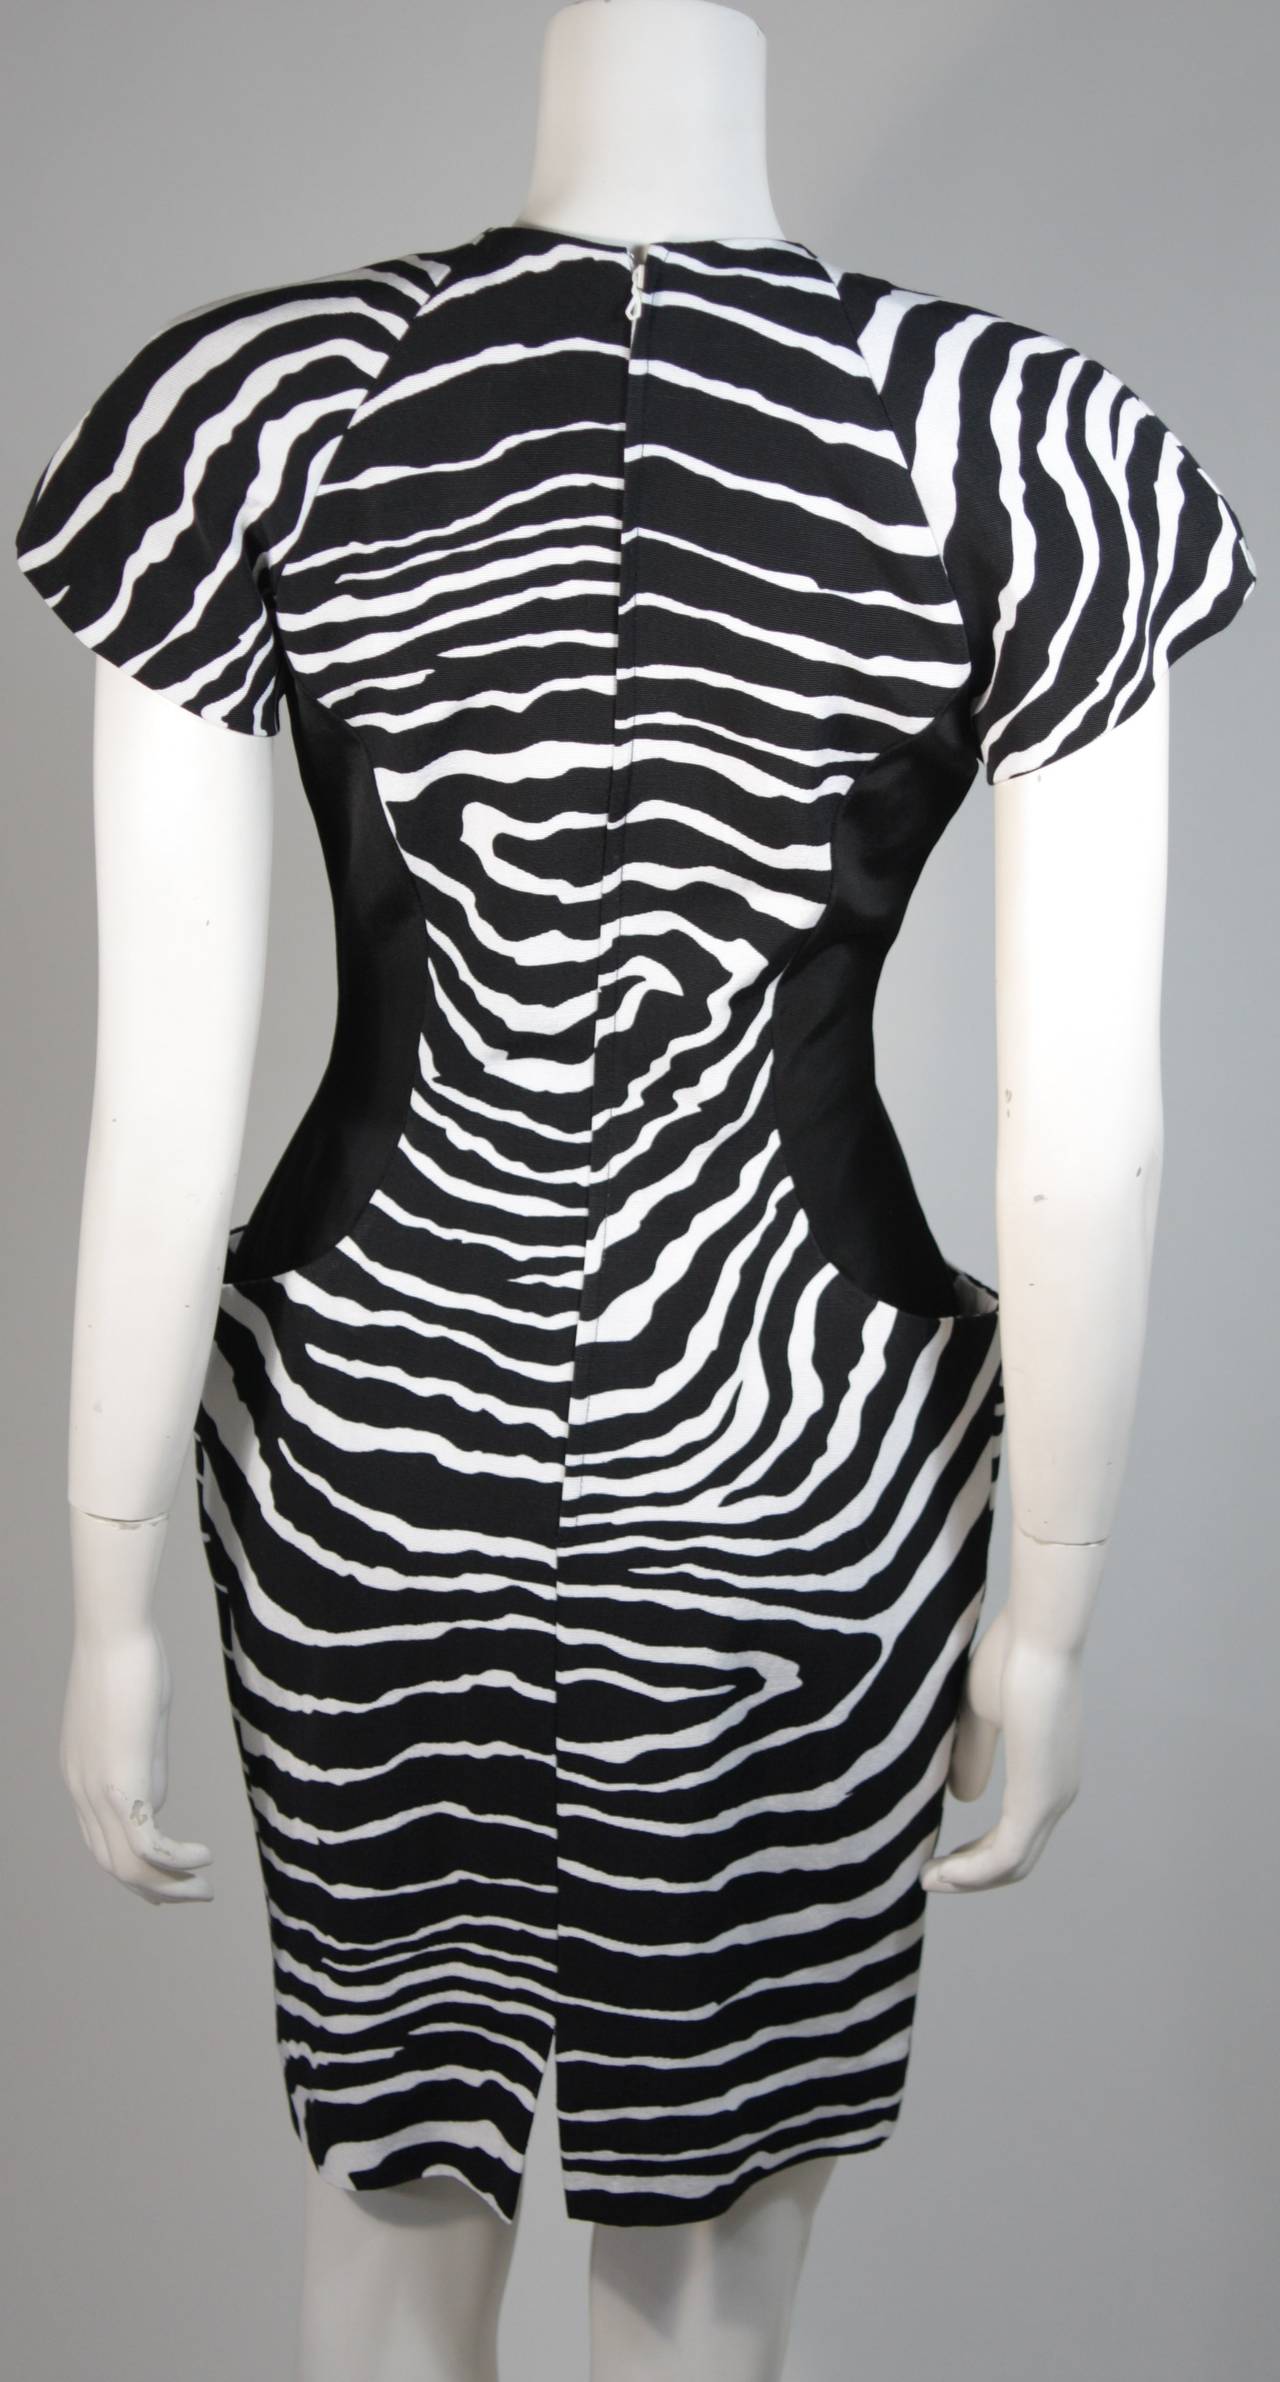 Vicky Tiel Black and White Zebra Patterned Cocktail Dress Size Small 5